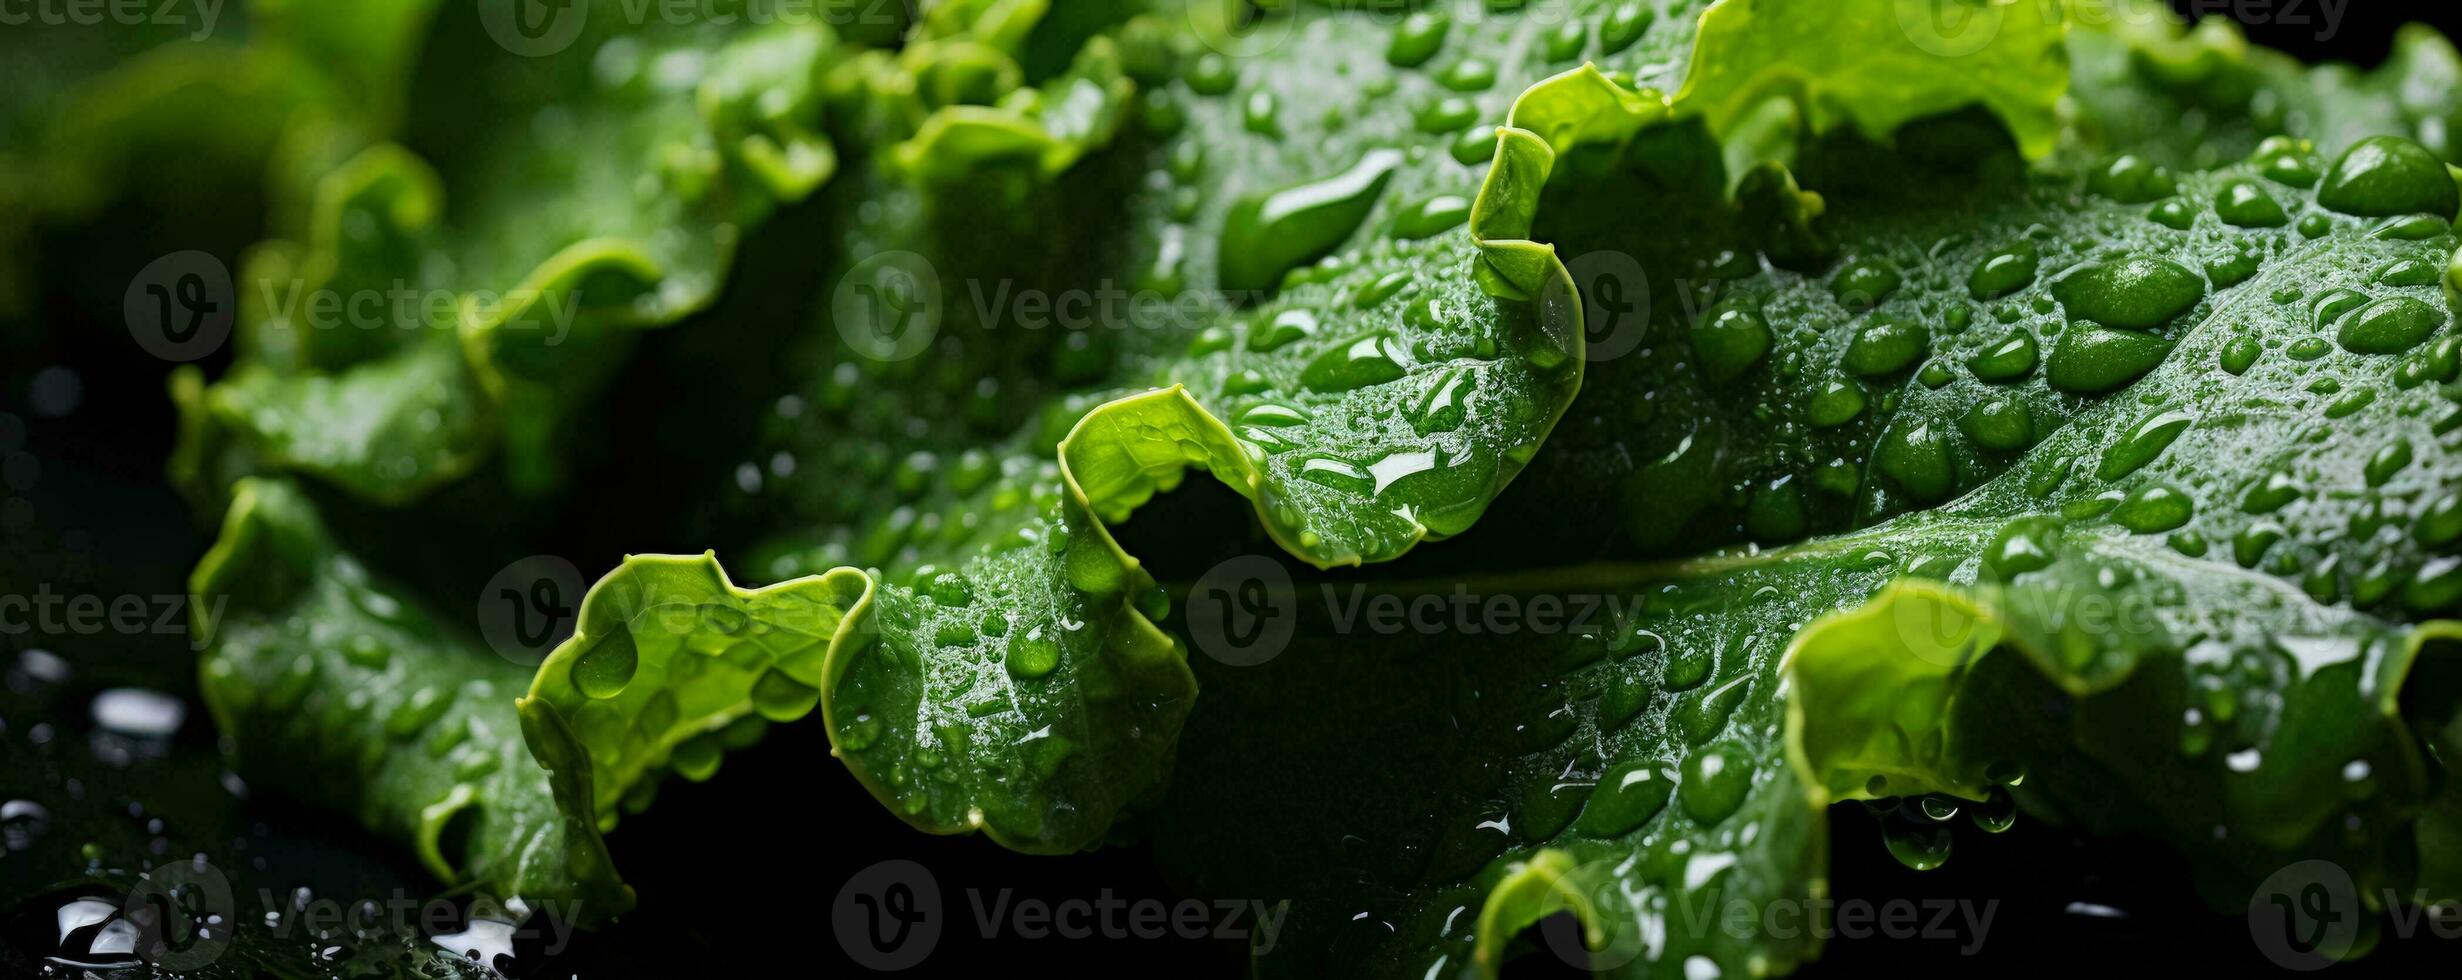 boerenkool bladeren met water druppels foto